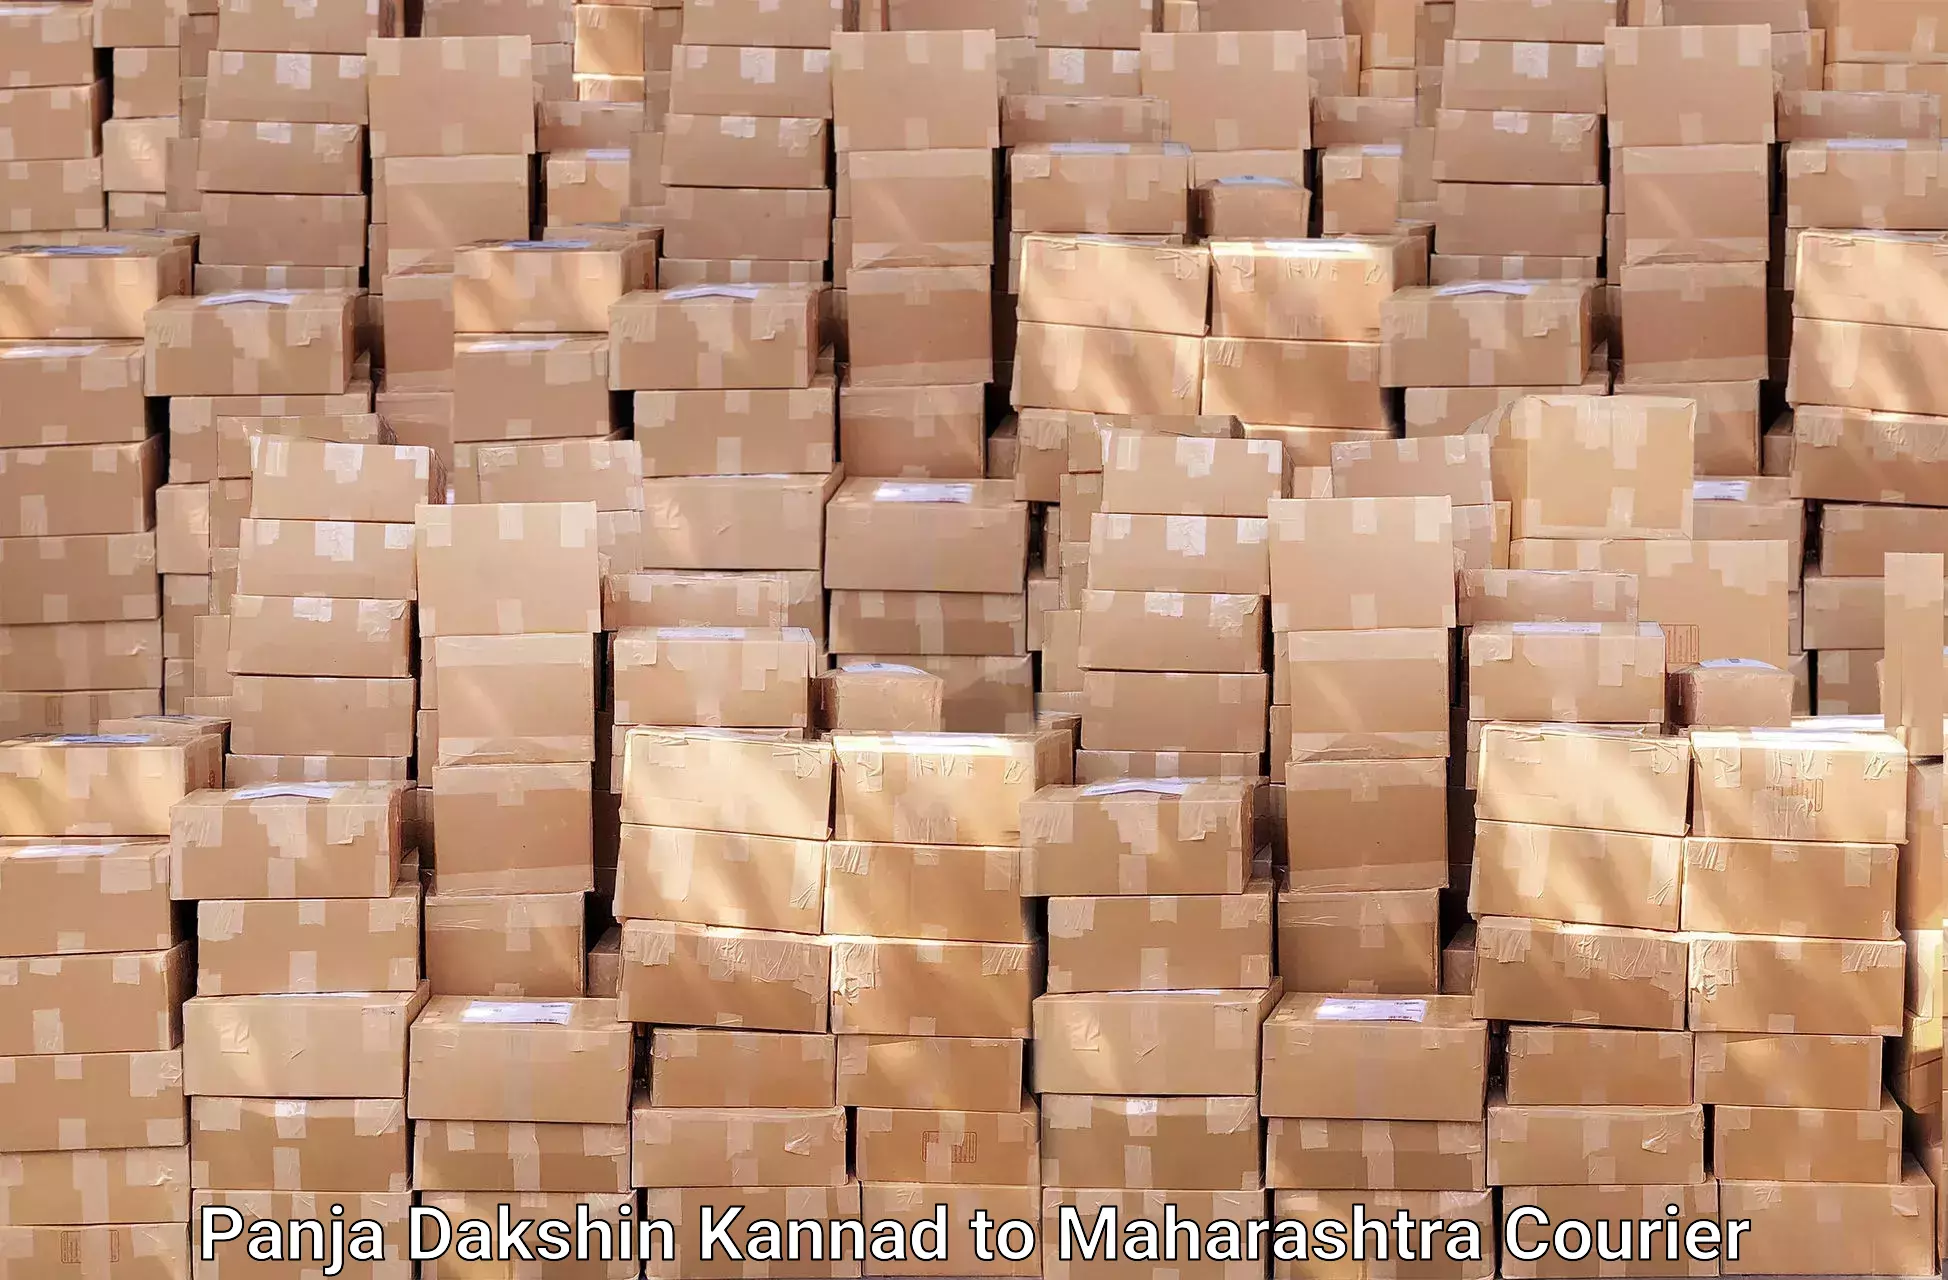 Efficient moving strategies Panja Dakshin Kannad to Panchwad